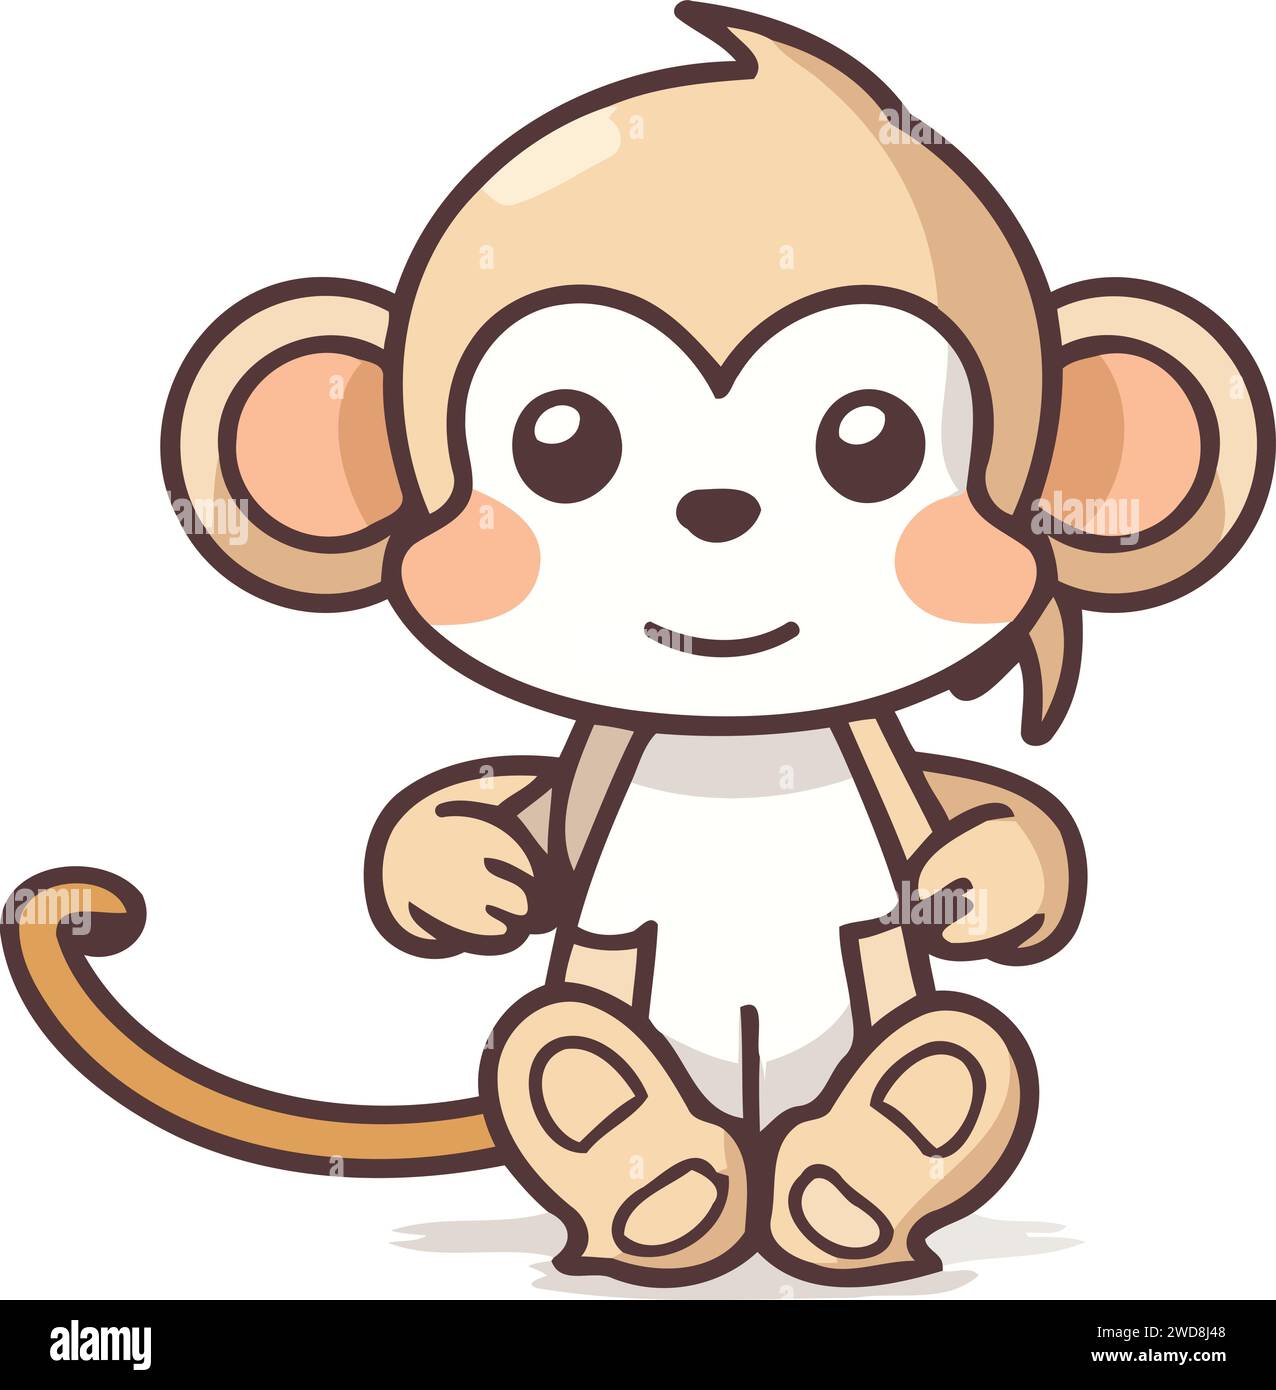 Illustration vectorielle de personnage de dessin animé de singe mignon. Mascotte drôle de dessin animé de singe. Illustration de Vecteur